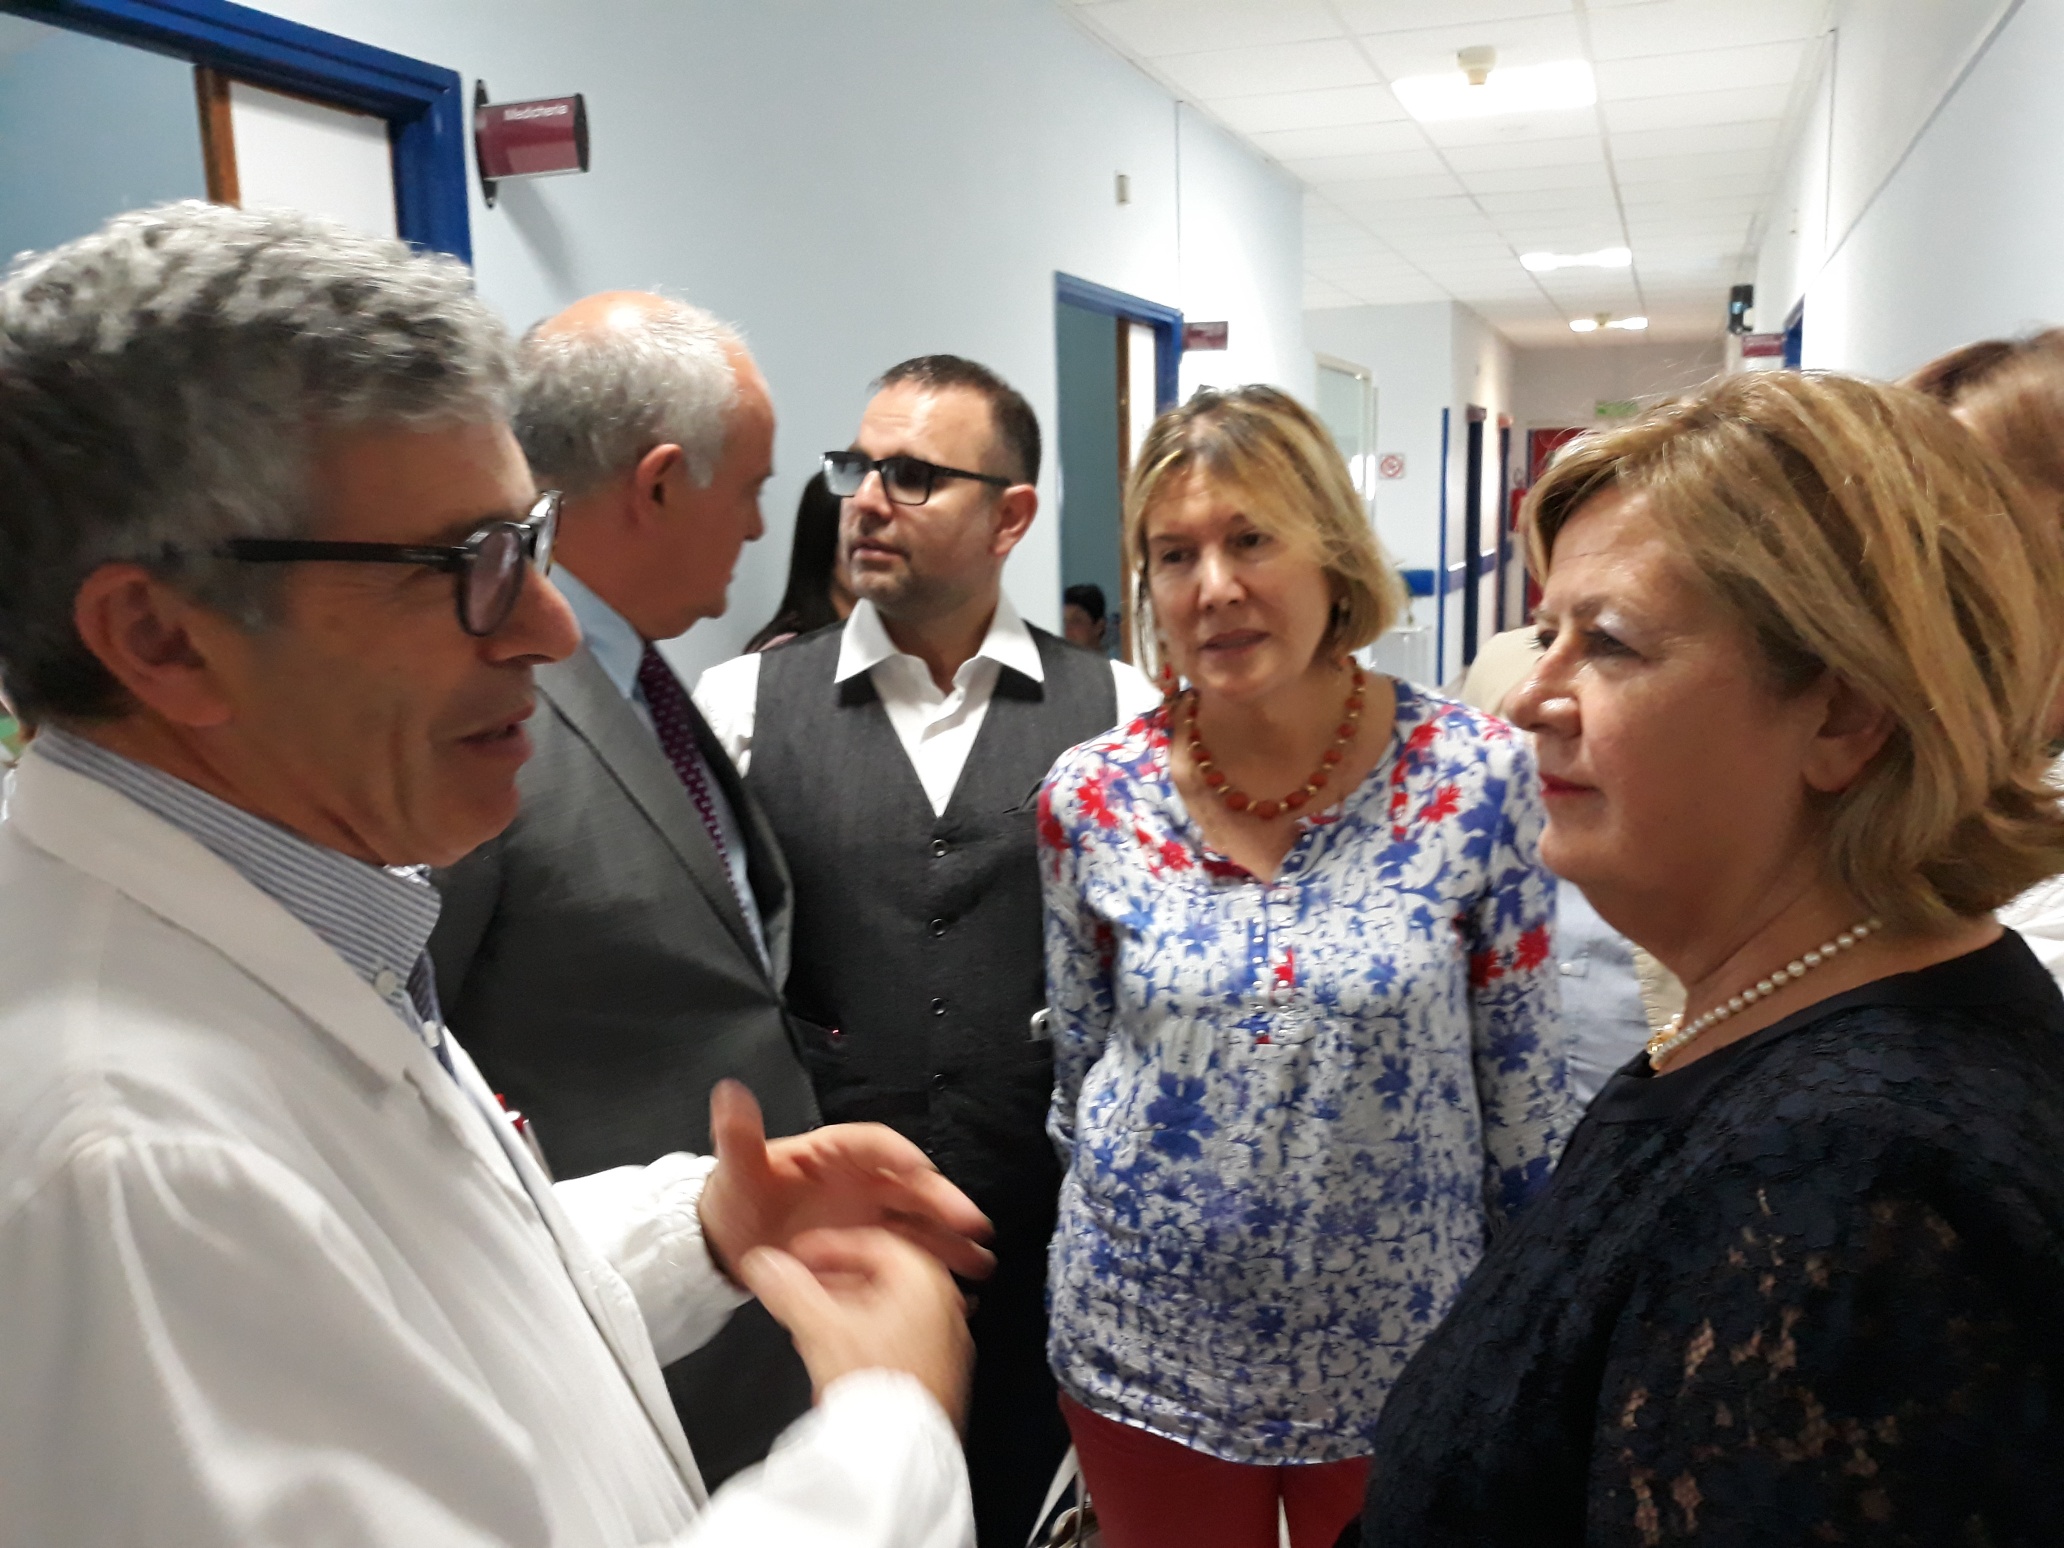 L’assessore regionale Verì visita l’ospedale di Avezzano insieme al consigliere Angelosante